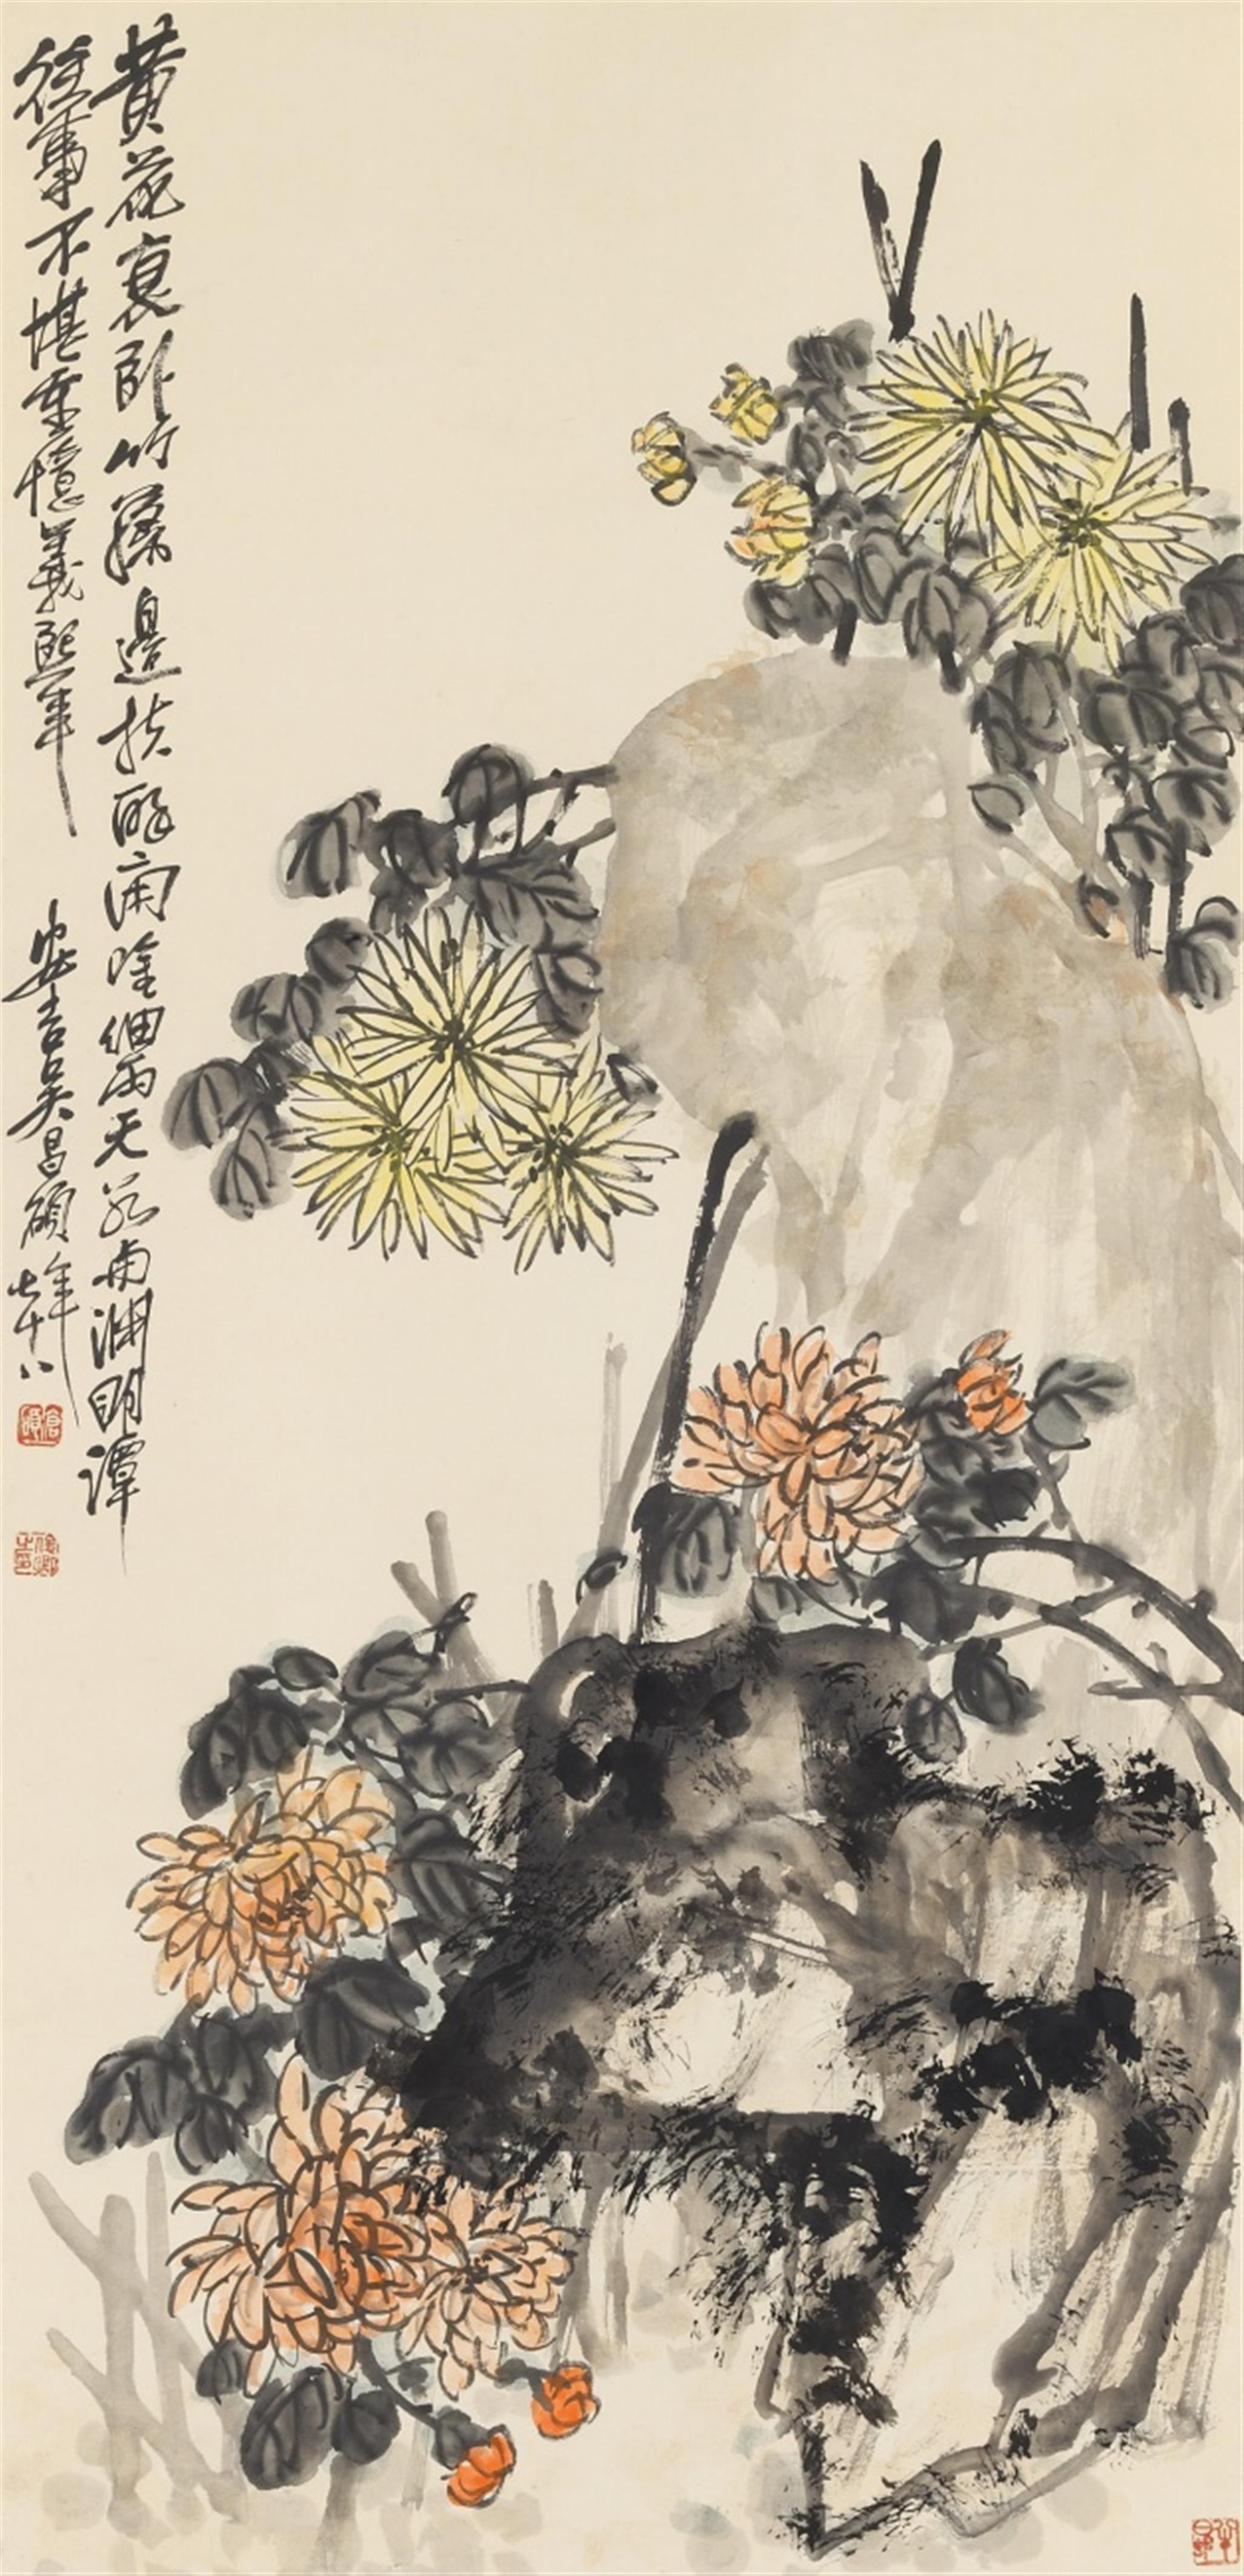 Wu Changshuo - Chrysanthemen an Felsen. Hängerolle. Tusche und Farben auf Papier. Aufschrift, sign.: Wu Changshuo qishiba nian und Siegel: Cang shuo, Junqing zhi yin und Banri cun. - image-1